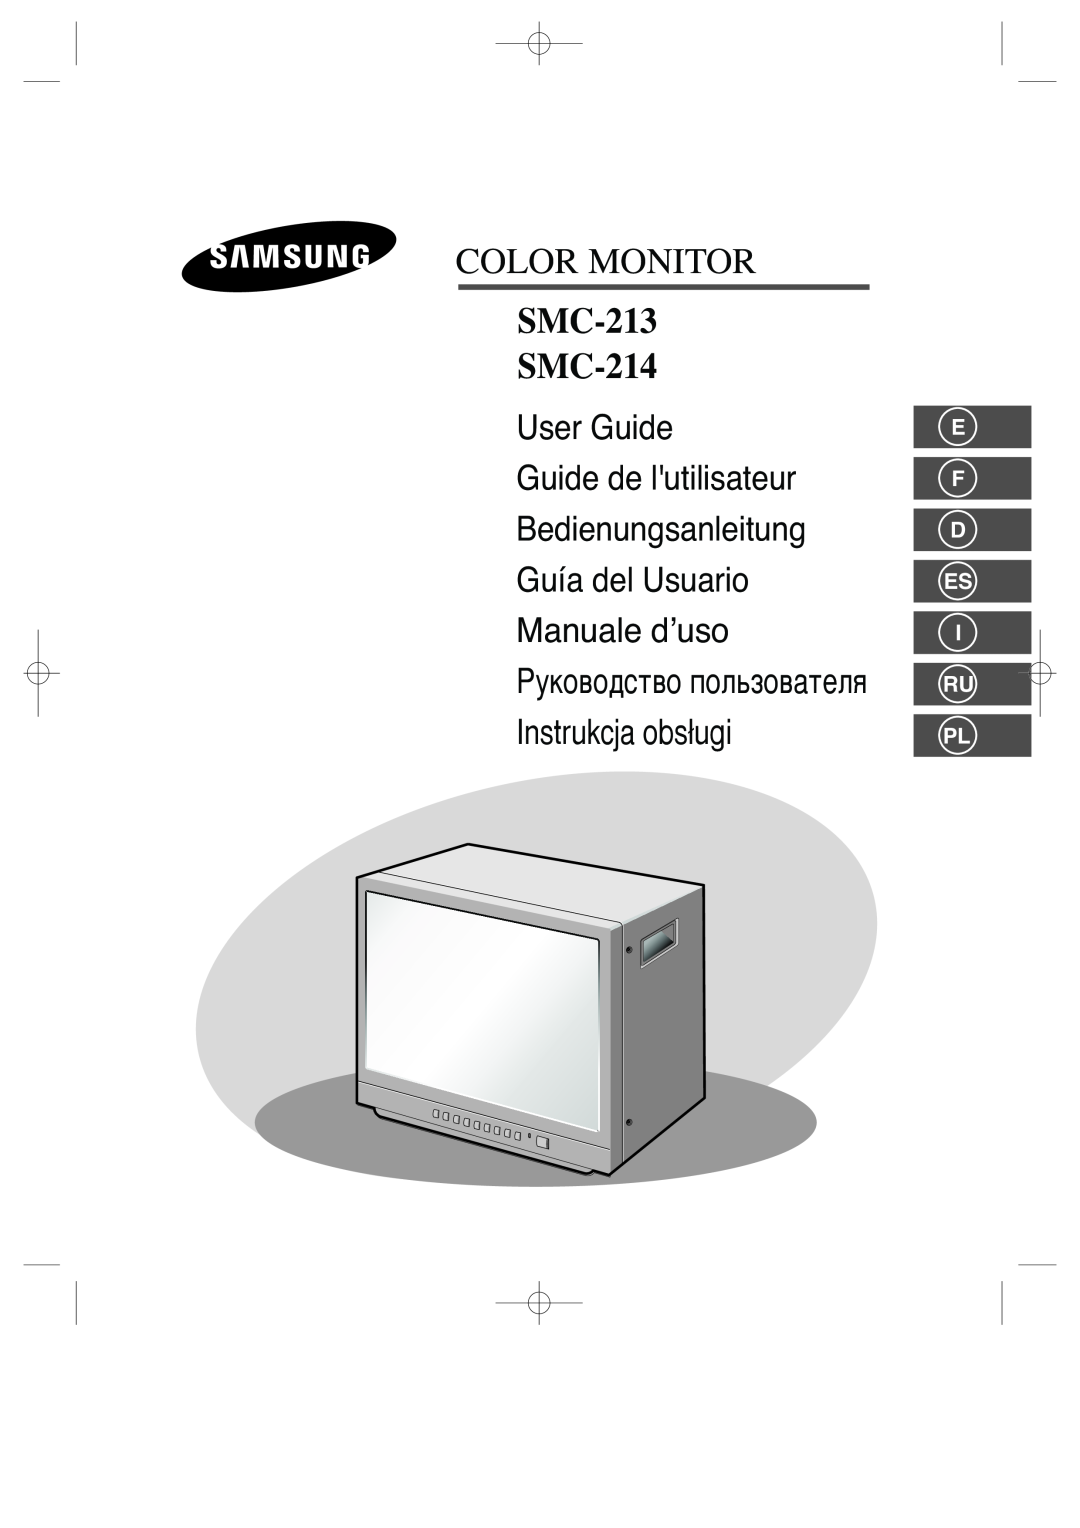 Samsung manual E F D Es I Ru Pl, Color Monitor, SMC-213 SMC-214 U, Manuale d’uso 